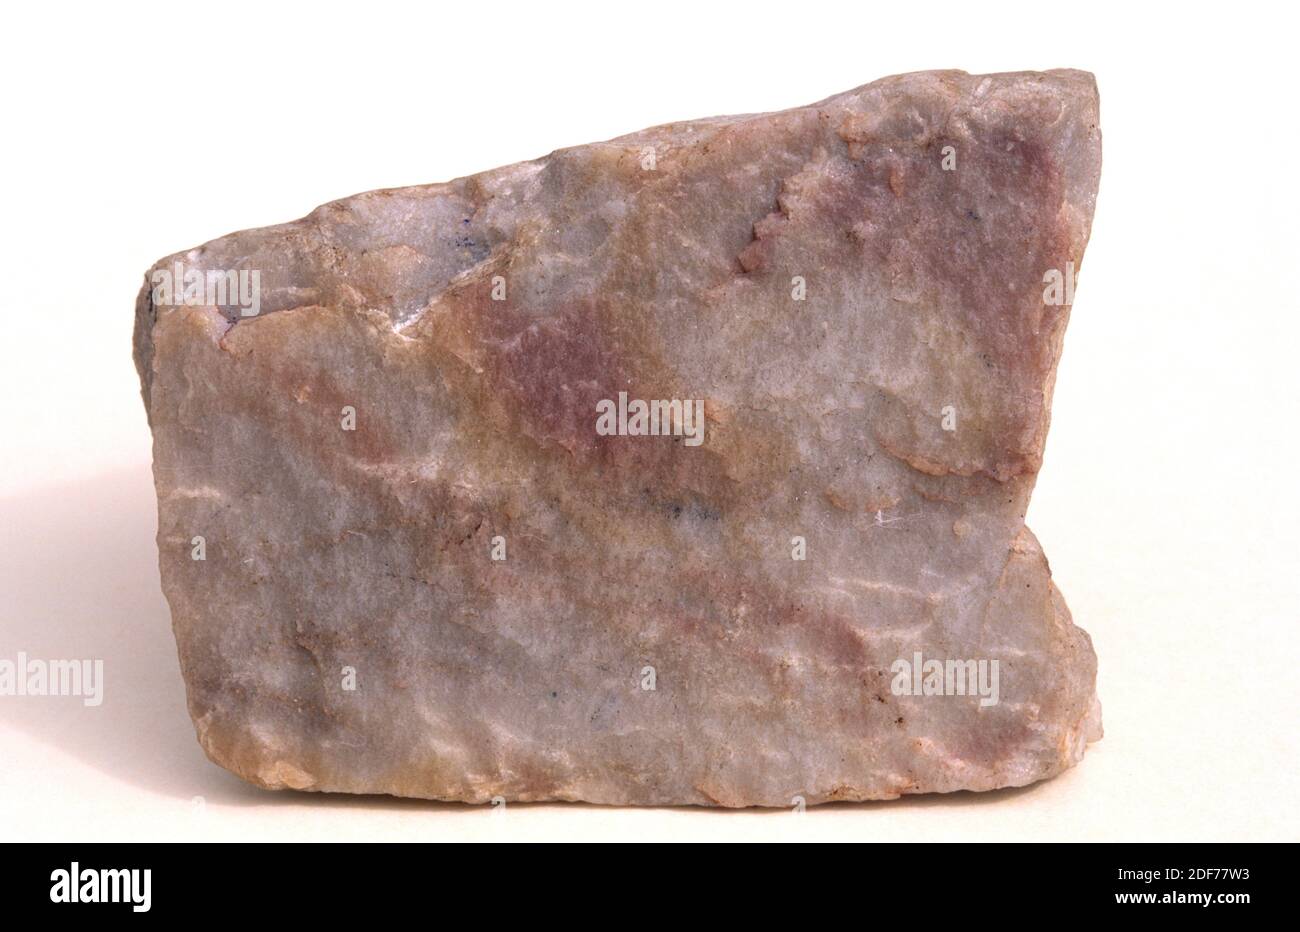 La cuarcita es una roca metamórfica compuesta de cuarzo. Muestra. Foto de stock